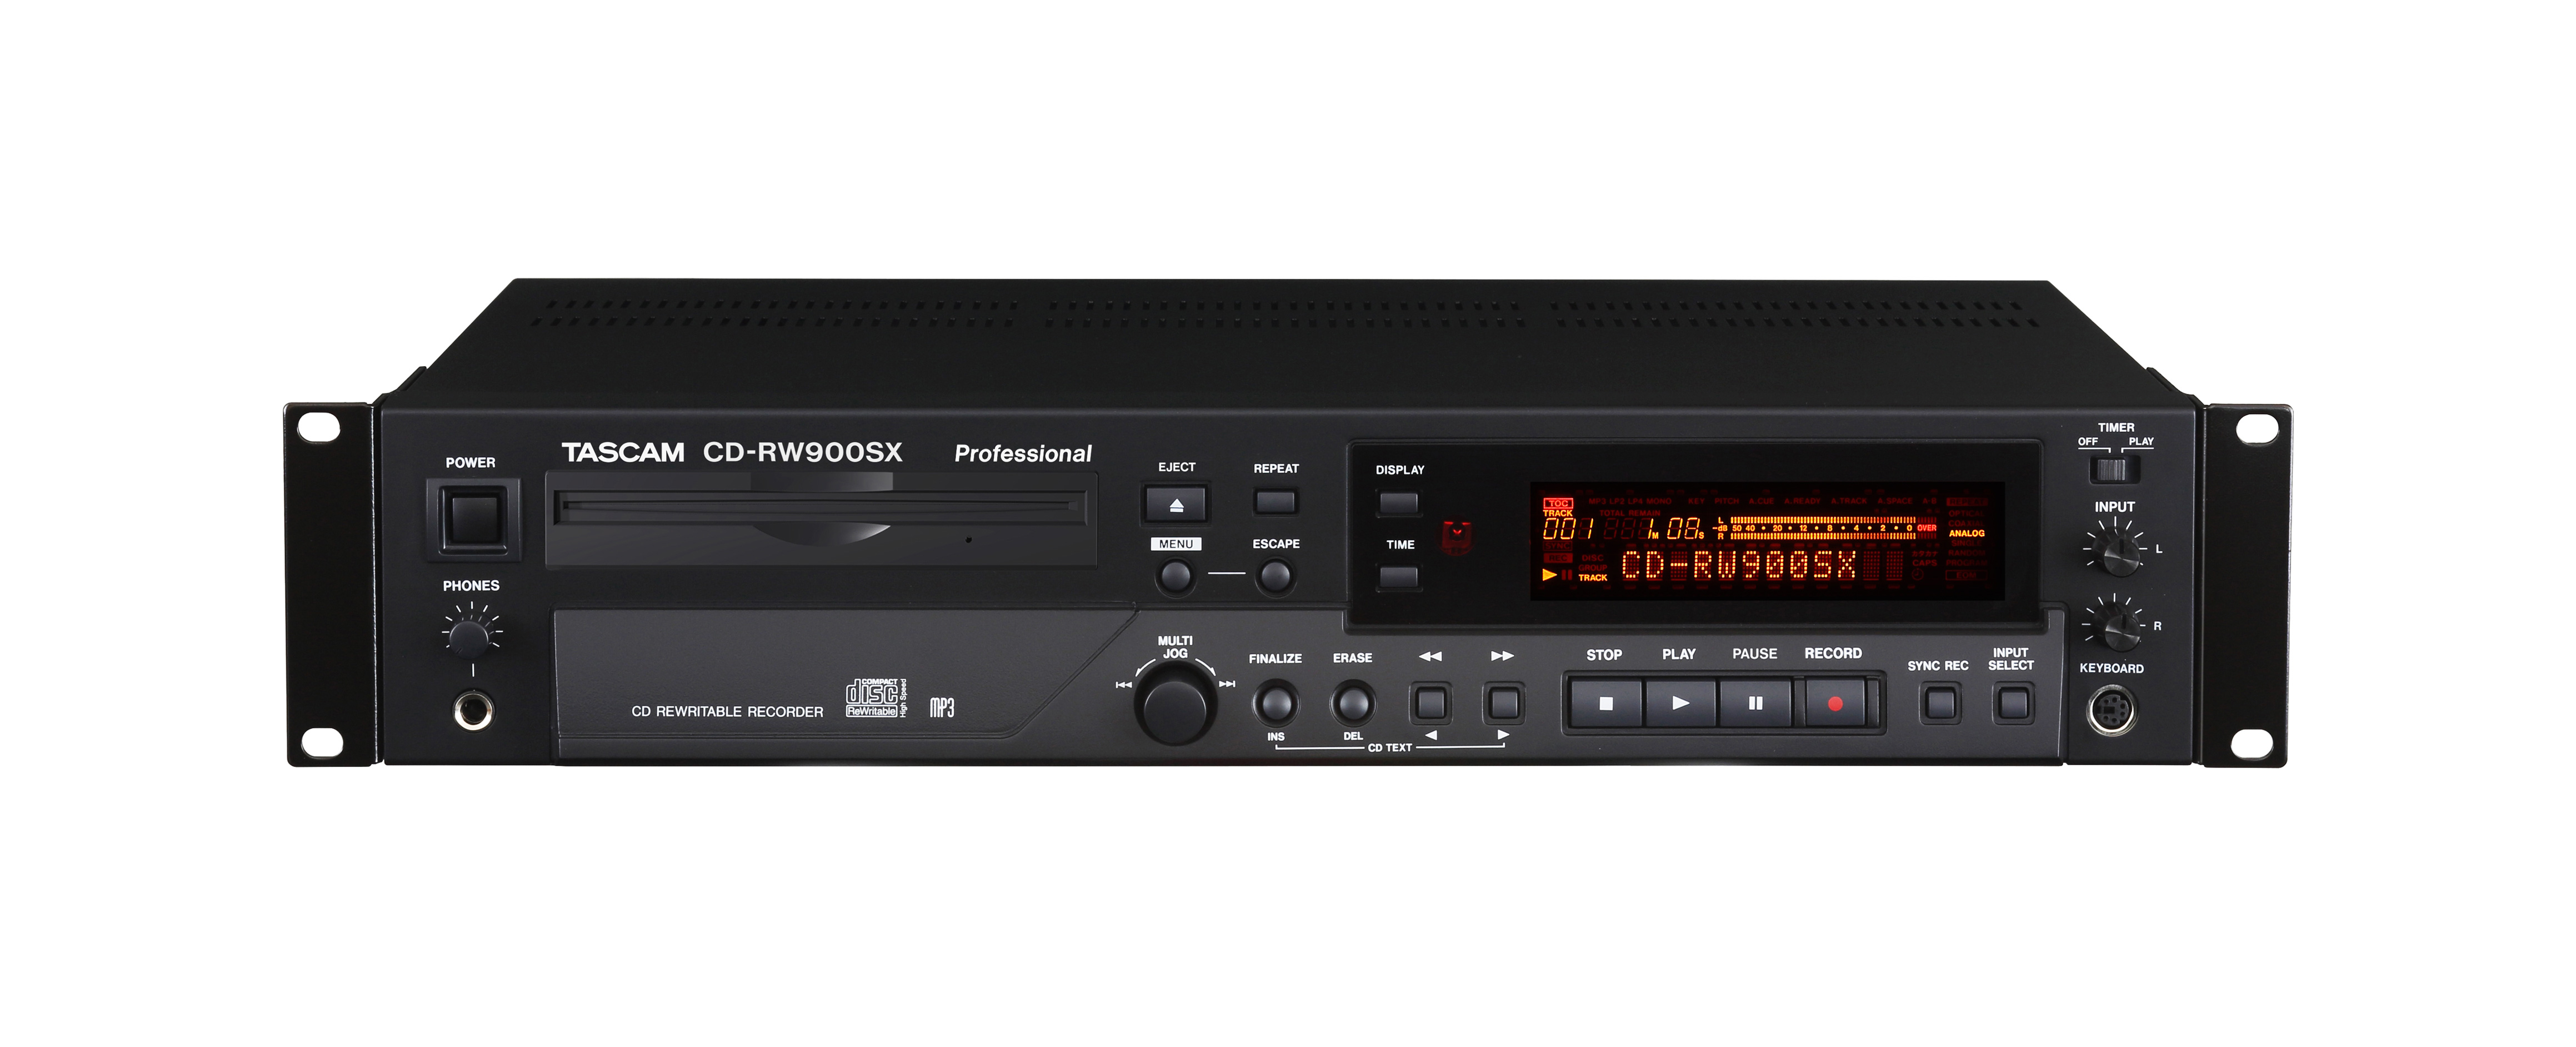 TACAM anuncia el grabador/reproductor de CD CD-RW900SX